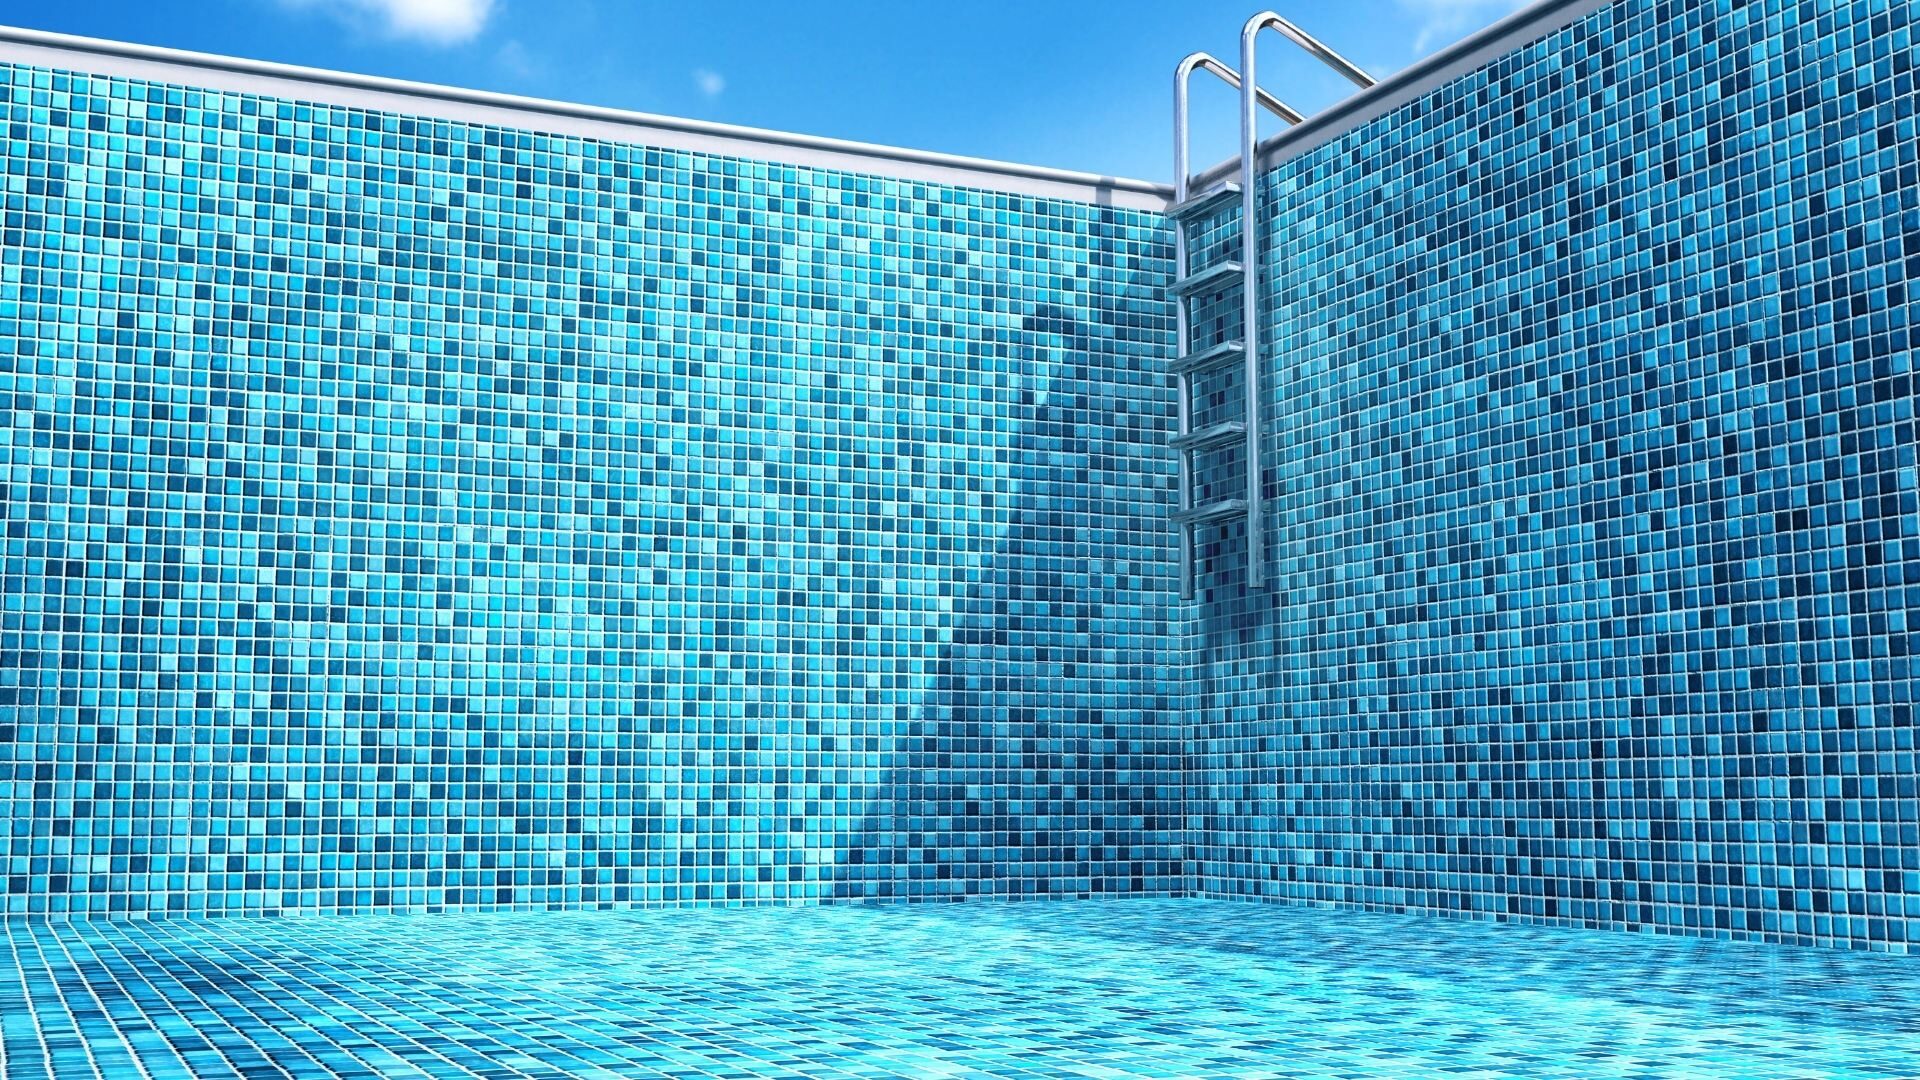 Stile mosaico per piscina